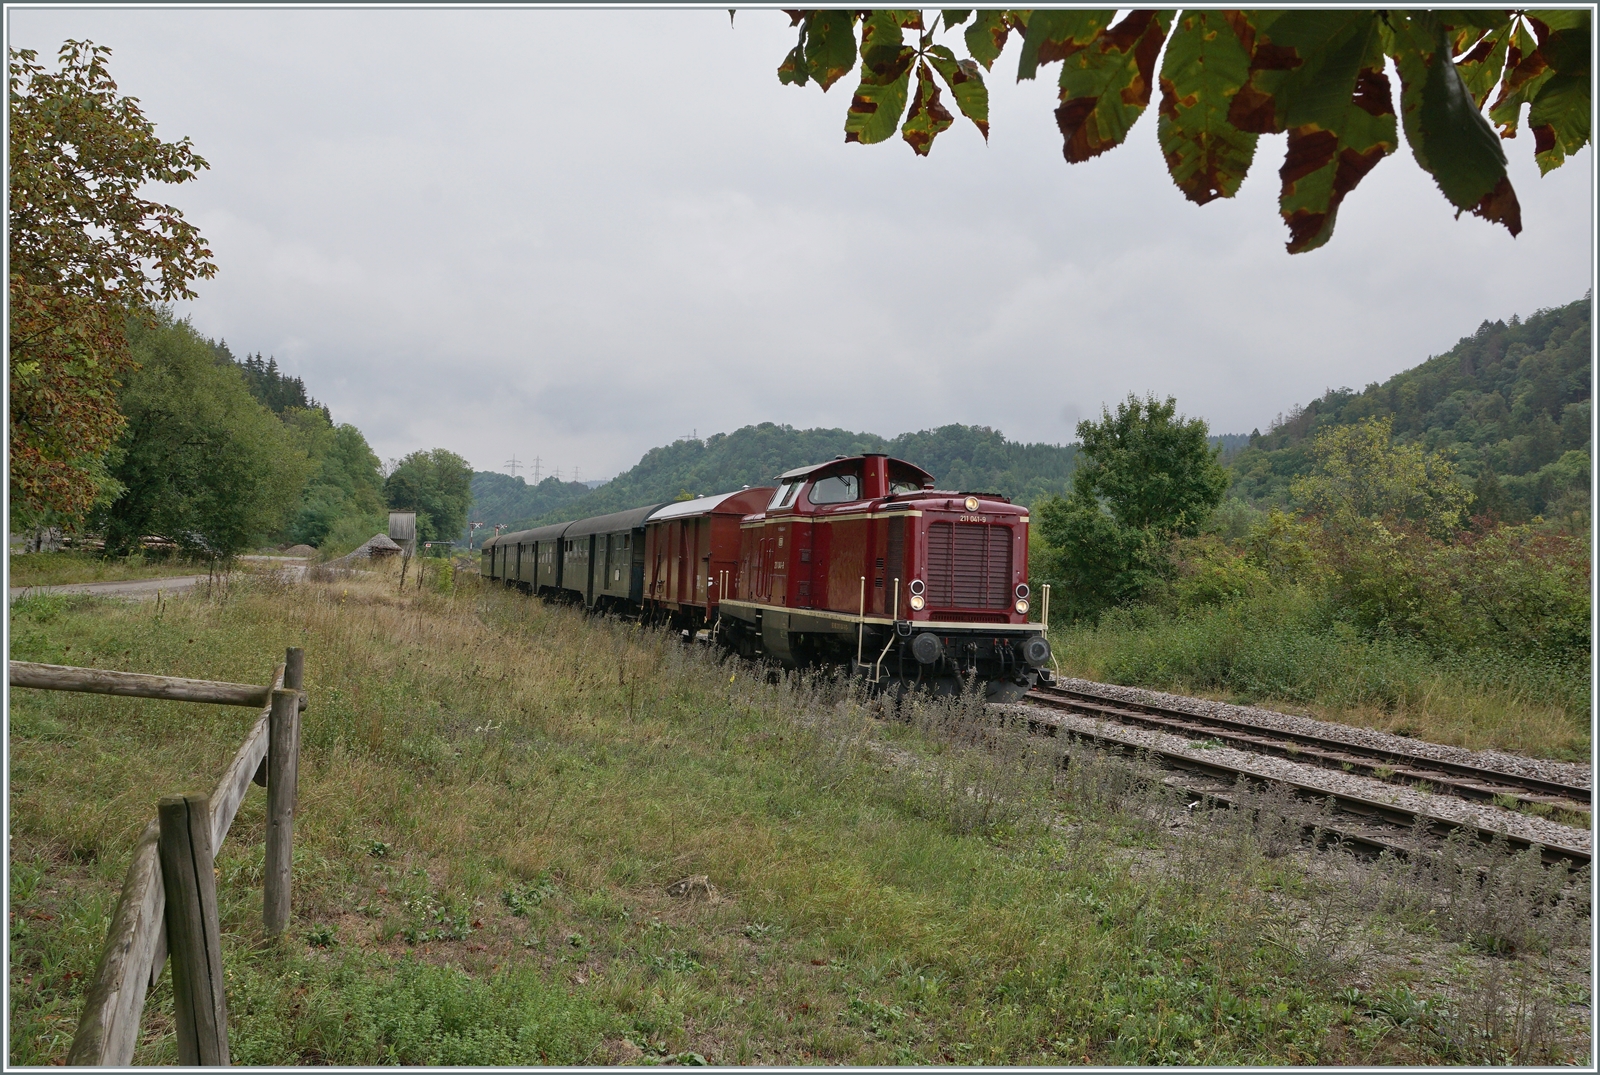 Fast am Ziel: Die 211 041-9 (92 80 1211 041-9 D-NeSA) erreicht mit ihrem Zug von Zollhaus Blumberg den Bahnhof von Weizen. 

27.08.2022